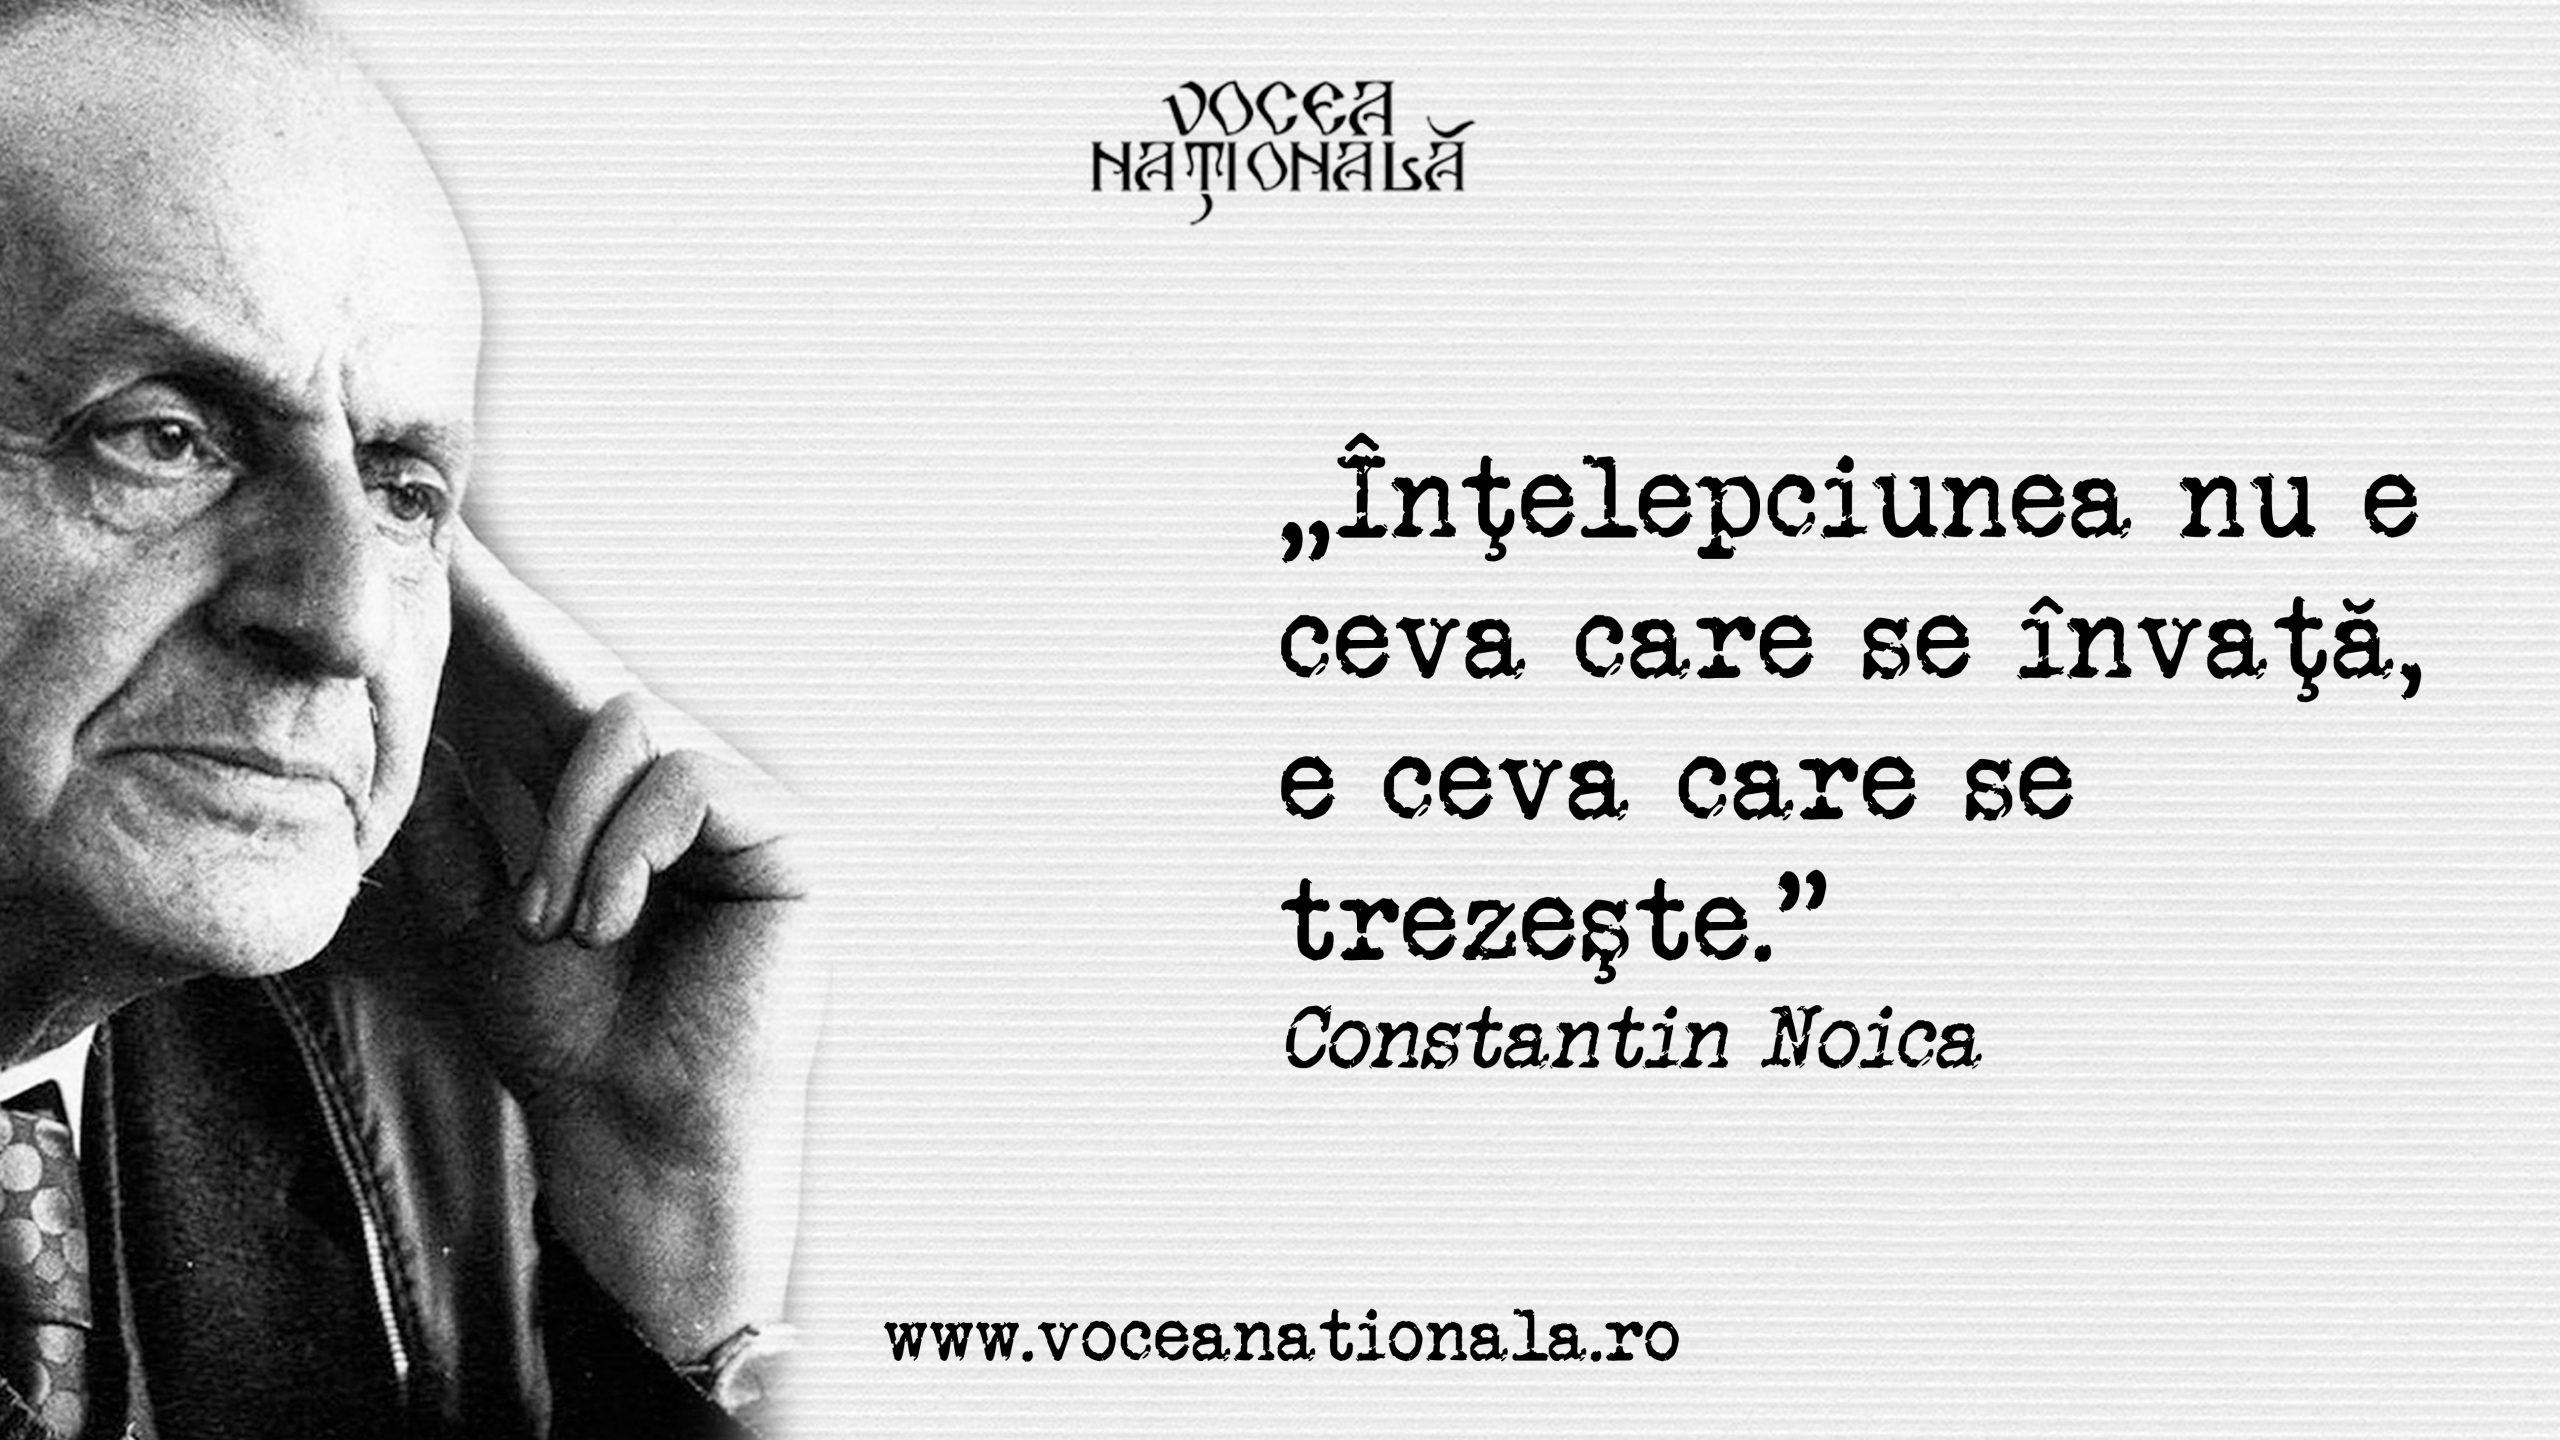 Constantin Noica a avut o viață remarcabilă și complexă, plină de realizări intelectuale și provocări personale.